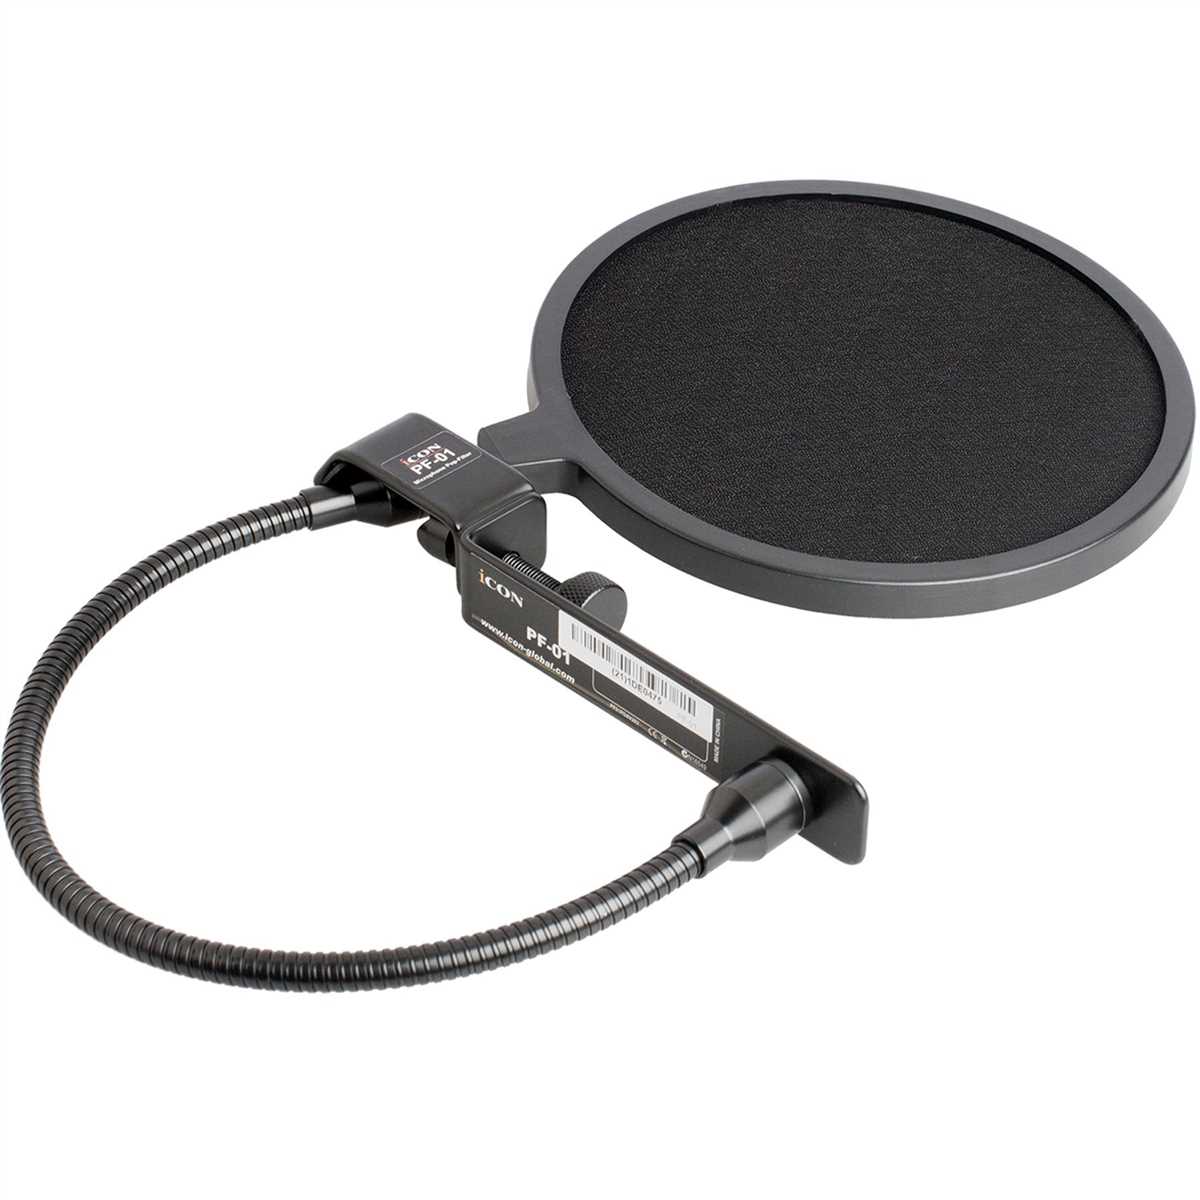 Поп-фильтры для микрофонов: суть и применение